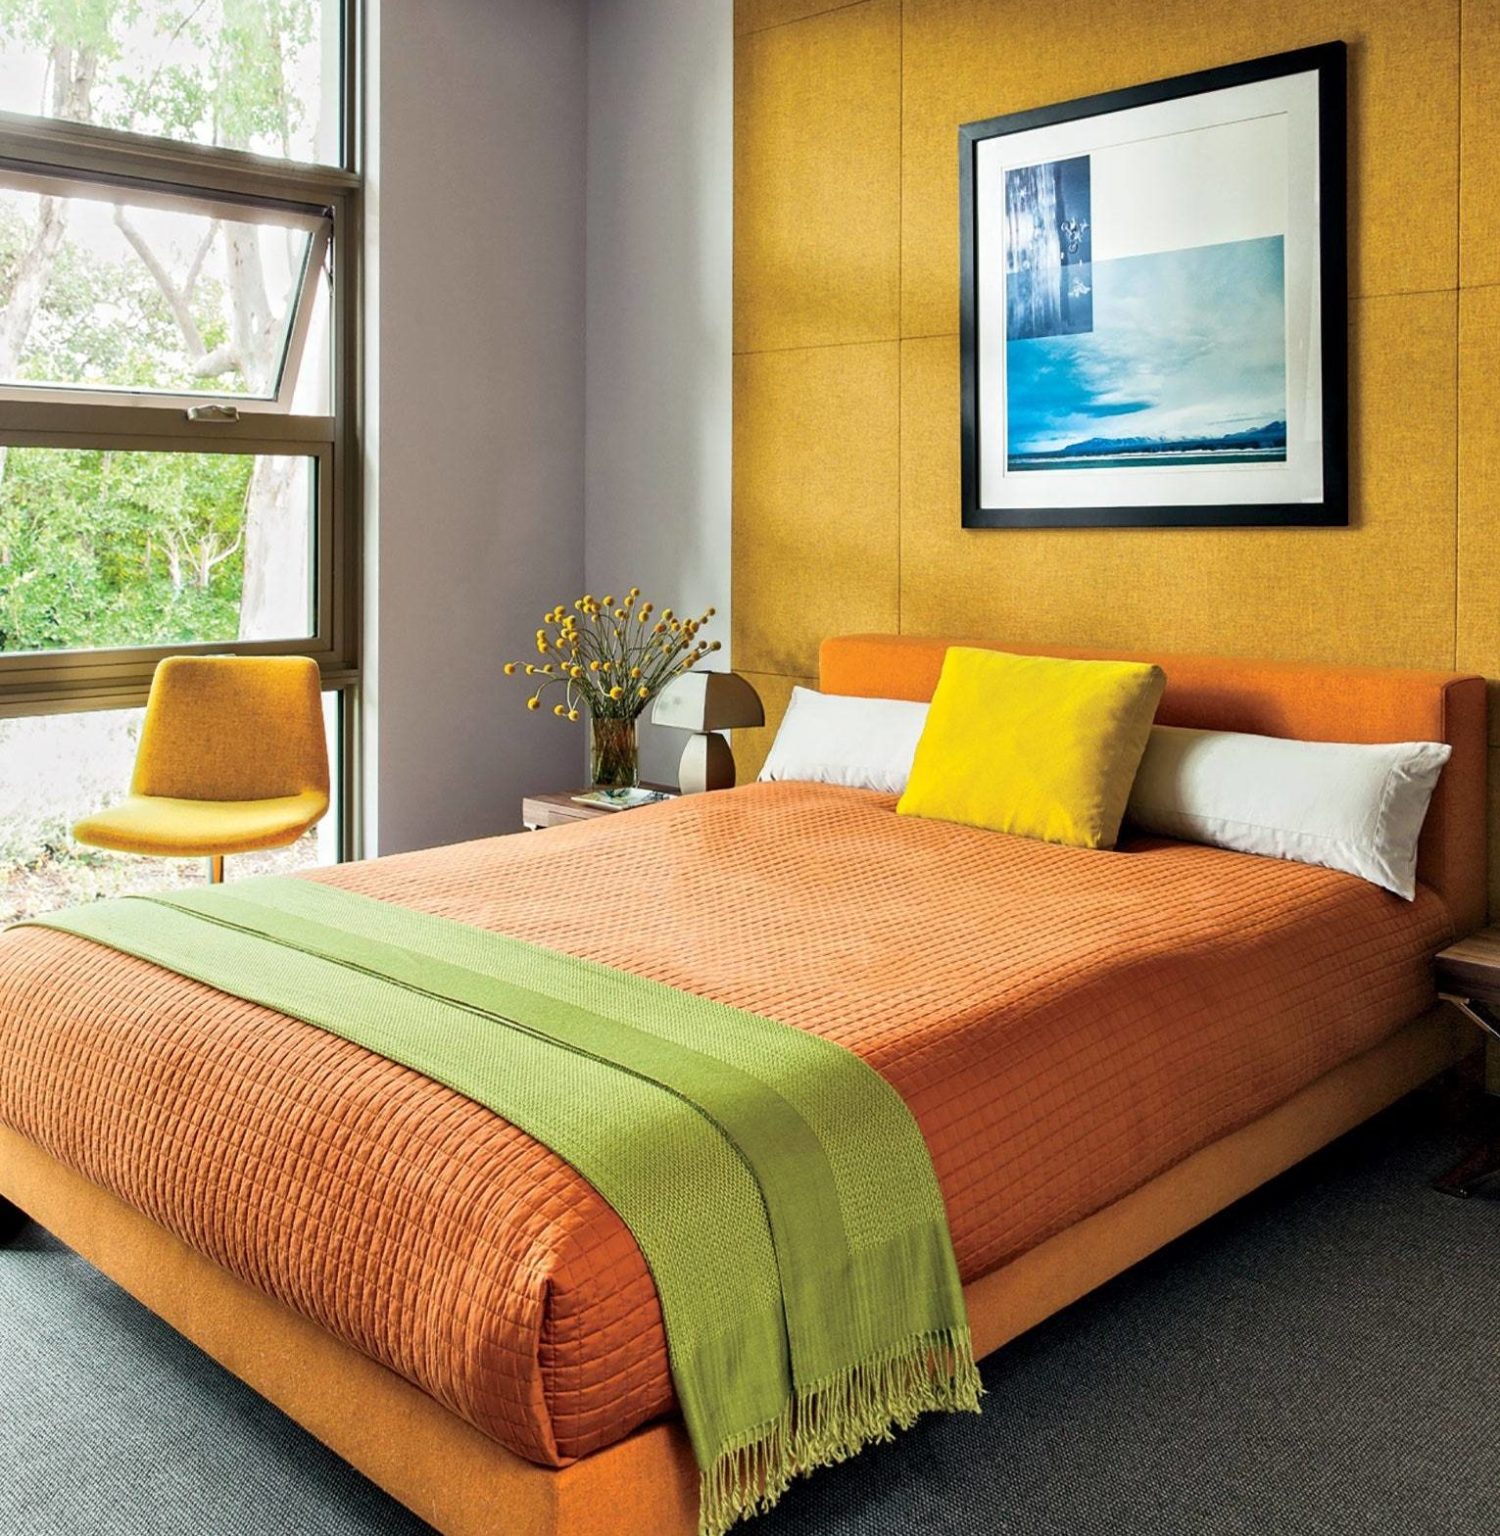 Bức tường nổi bật với tông màu mù tạt bằng vải được tô điểm bởi bộ khăn trải giường bằng vải thô, ghế màu vàng và khung giường đầy màu sắc trong phòng ngủ màu sắc rực rỡ này. Thiết kế của căn phòng được tối giản hóa thành công khi sử dụng tông màu vàng và sáng để mang lại sức sống cho khu vực.